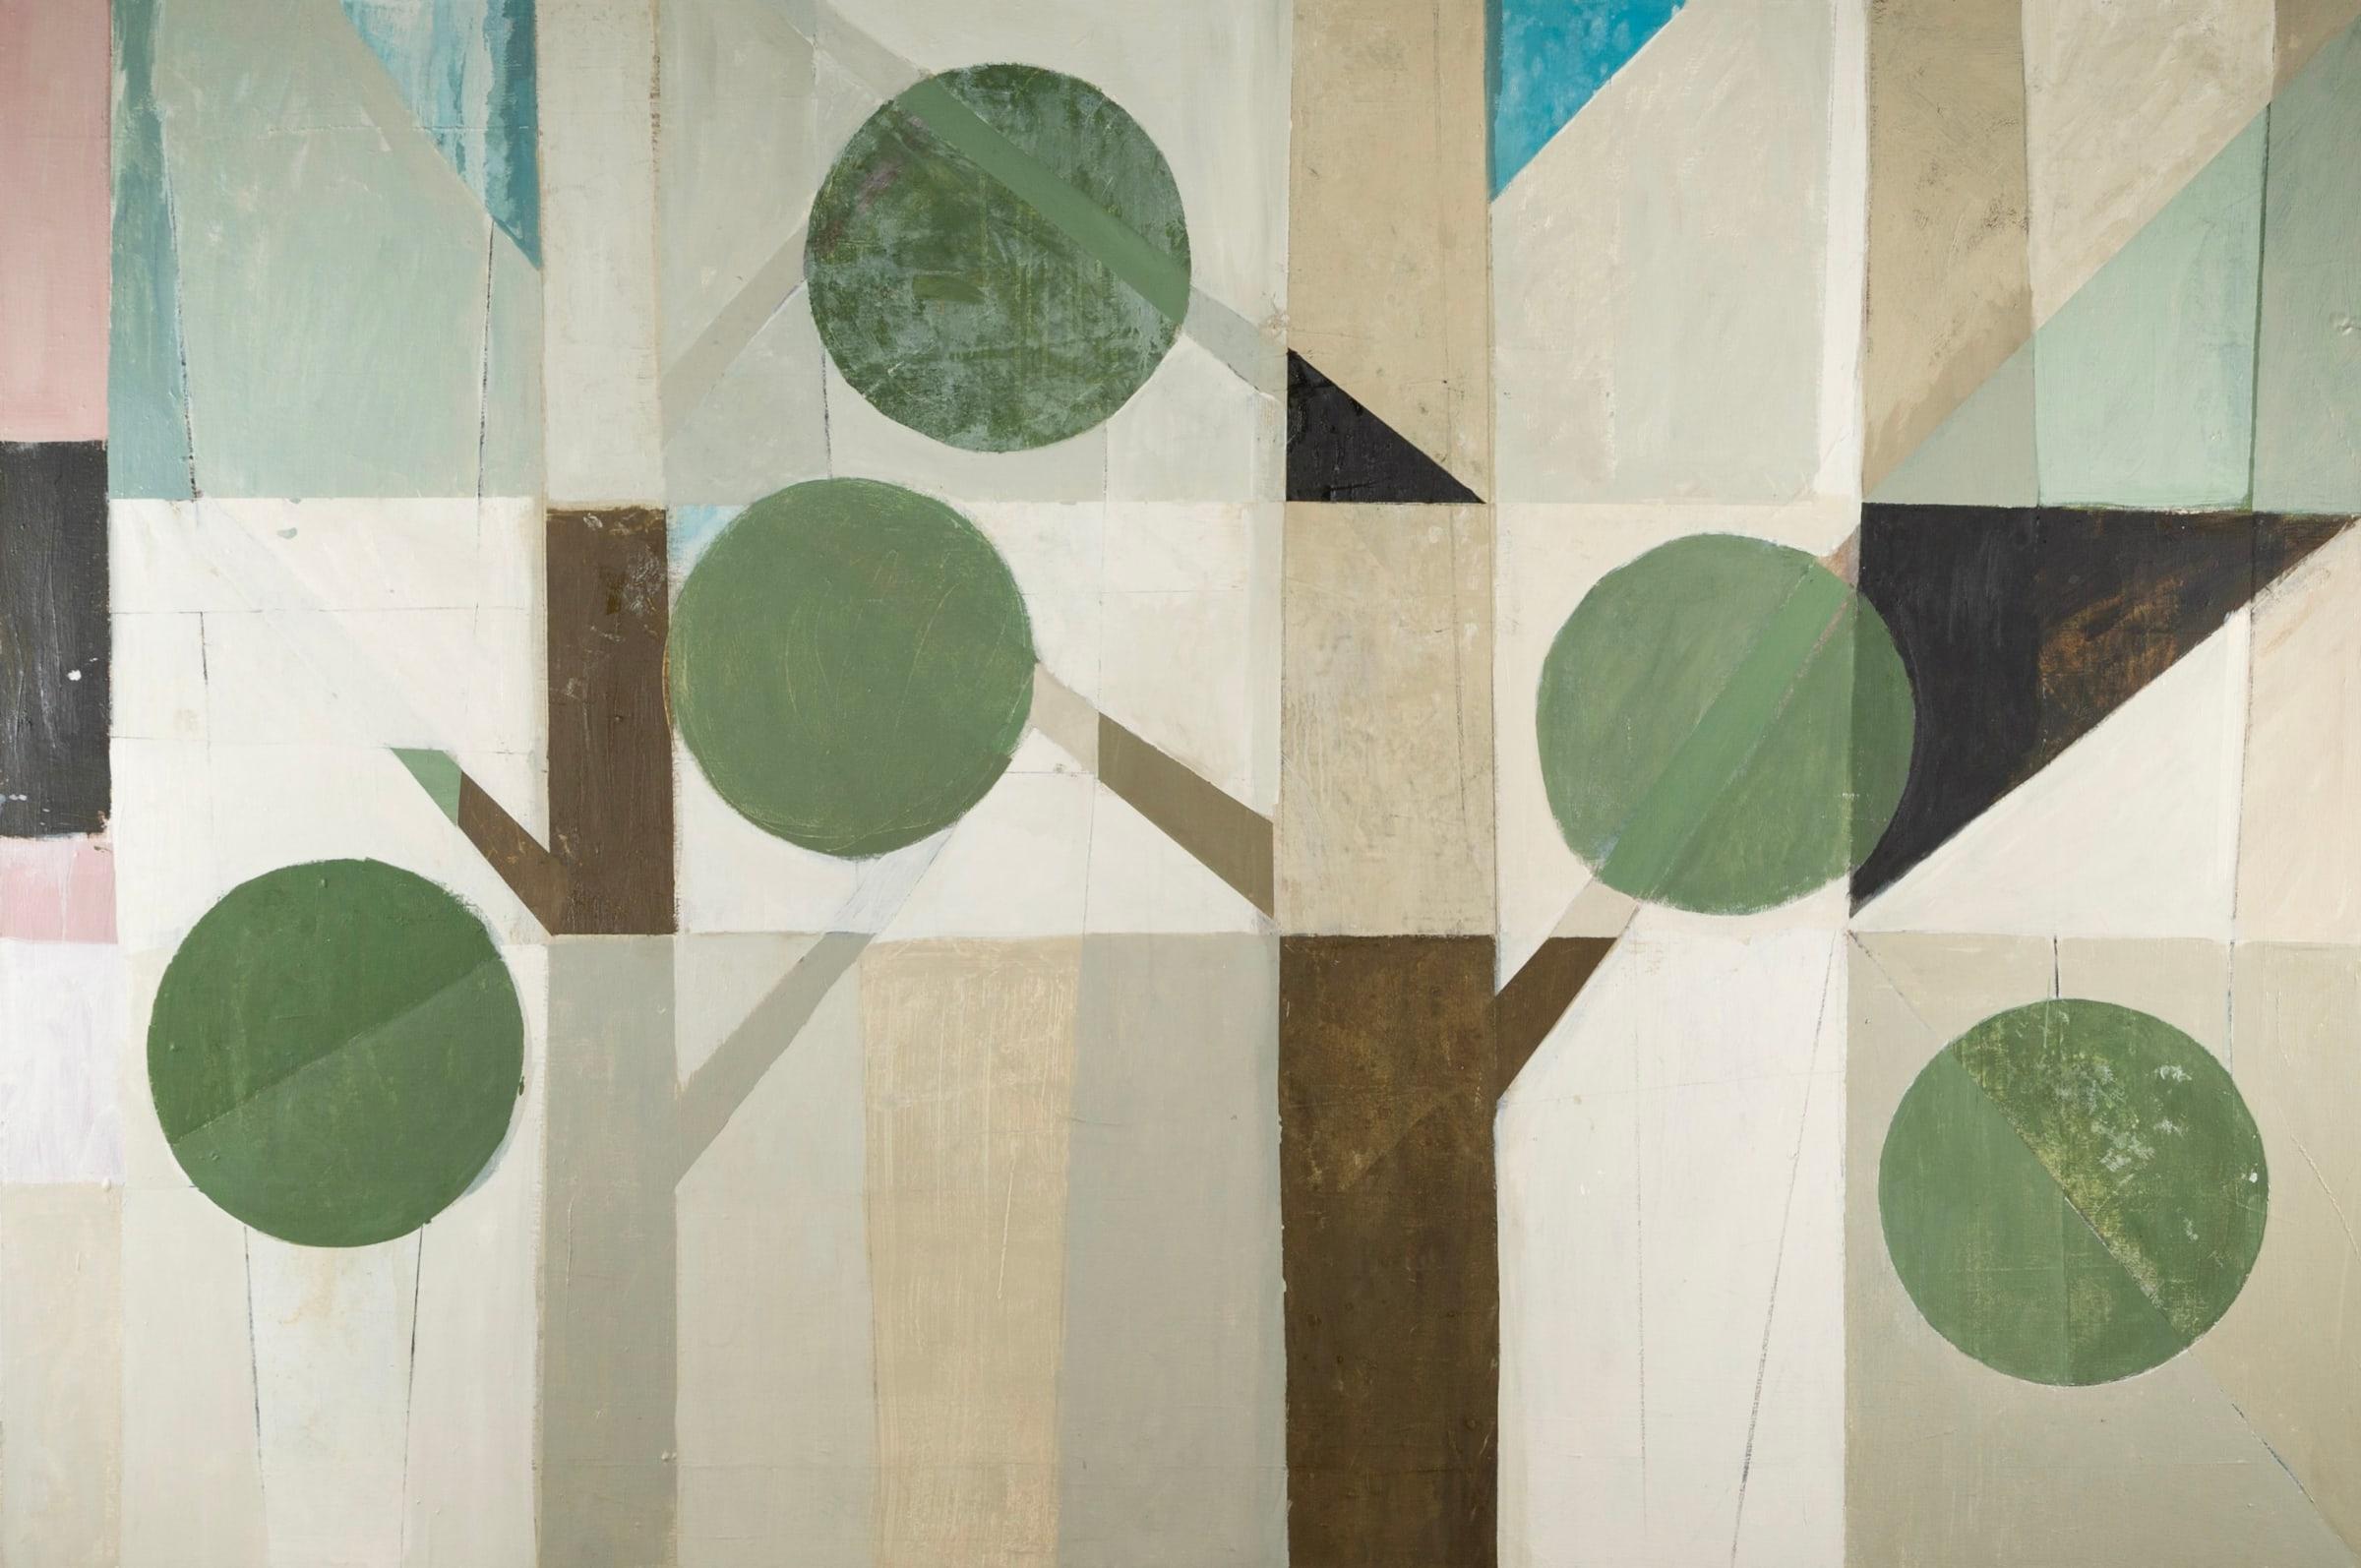 Tree Line, huile sur toile de Daisy Cook B. 1965, 2023

Informations complémentaires :
Médium : Huile sur toile
Dimensions : 121,5 x 182,5 cm : 121,5 x 182,5 cm
47 7/8 x 71 7/8 in
Signé

Daisy Cook est une peintre britannique de paysages et de